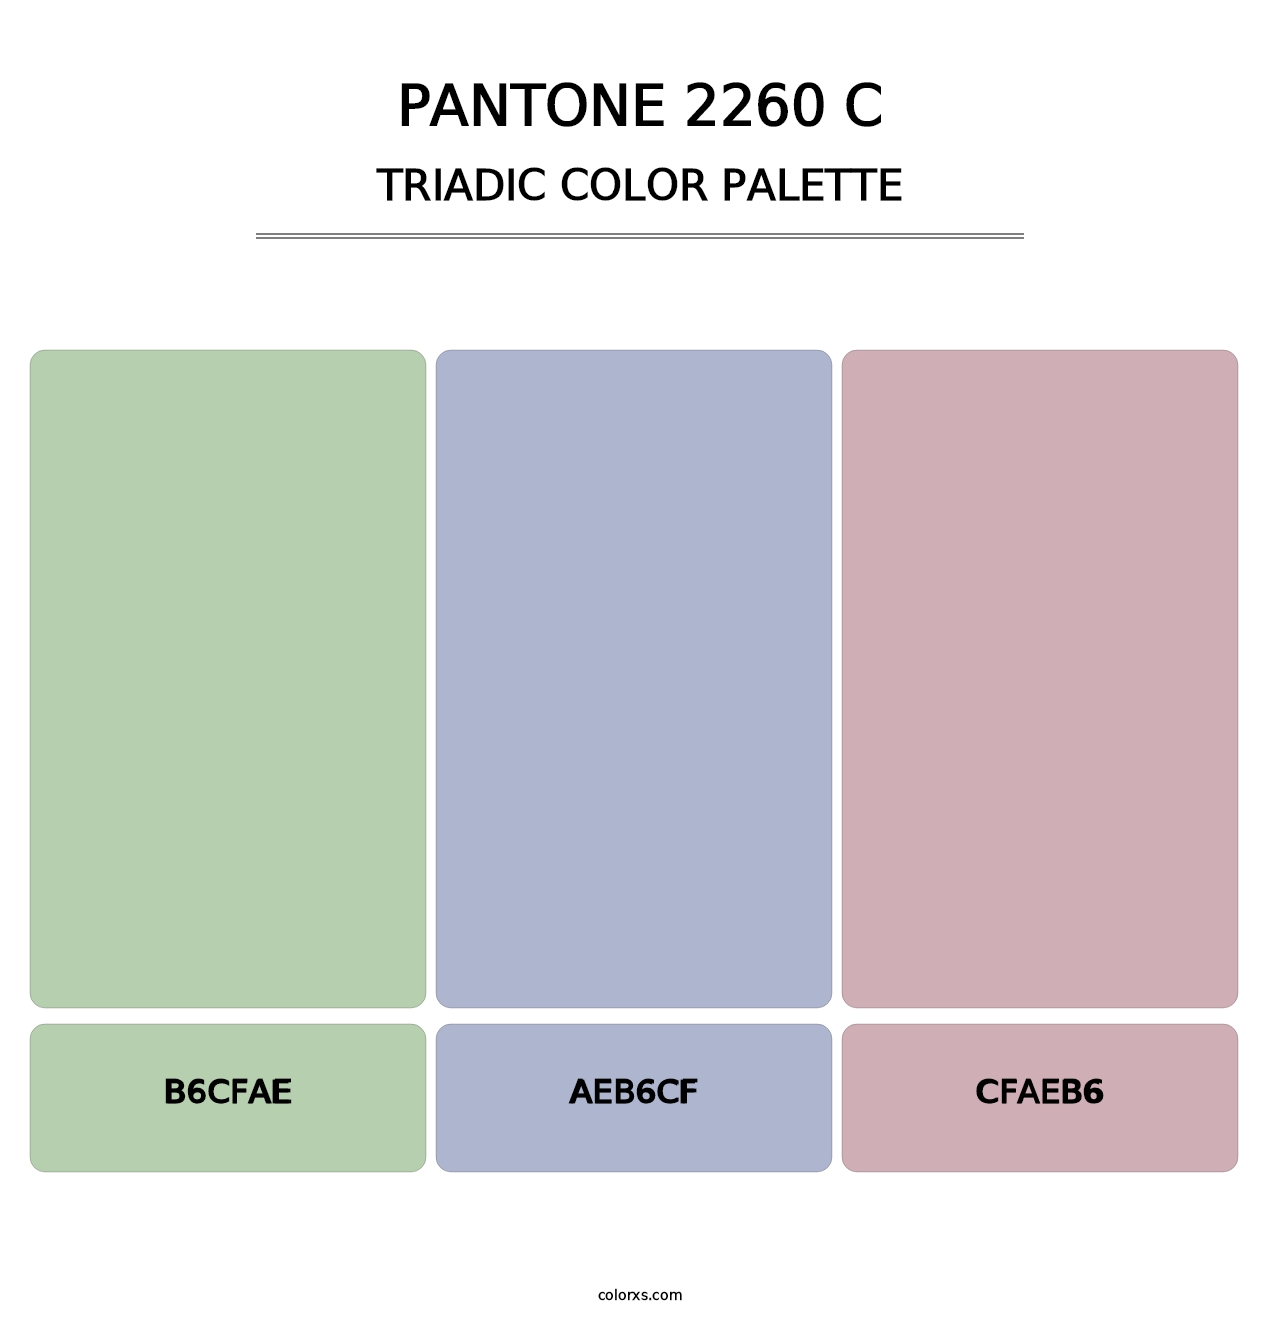 PANTONE 2260 C - Triadic Color Palette